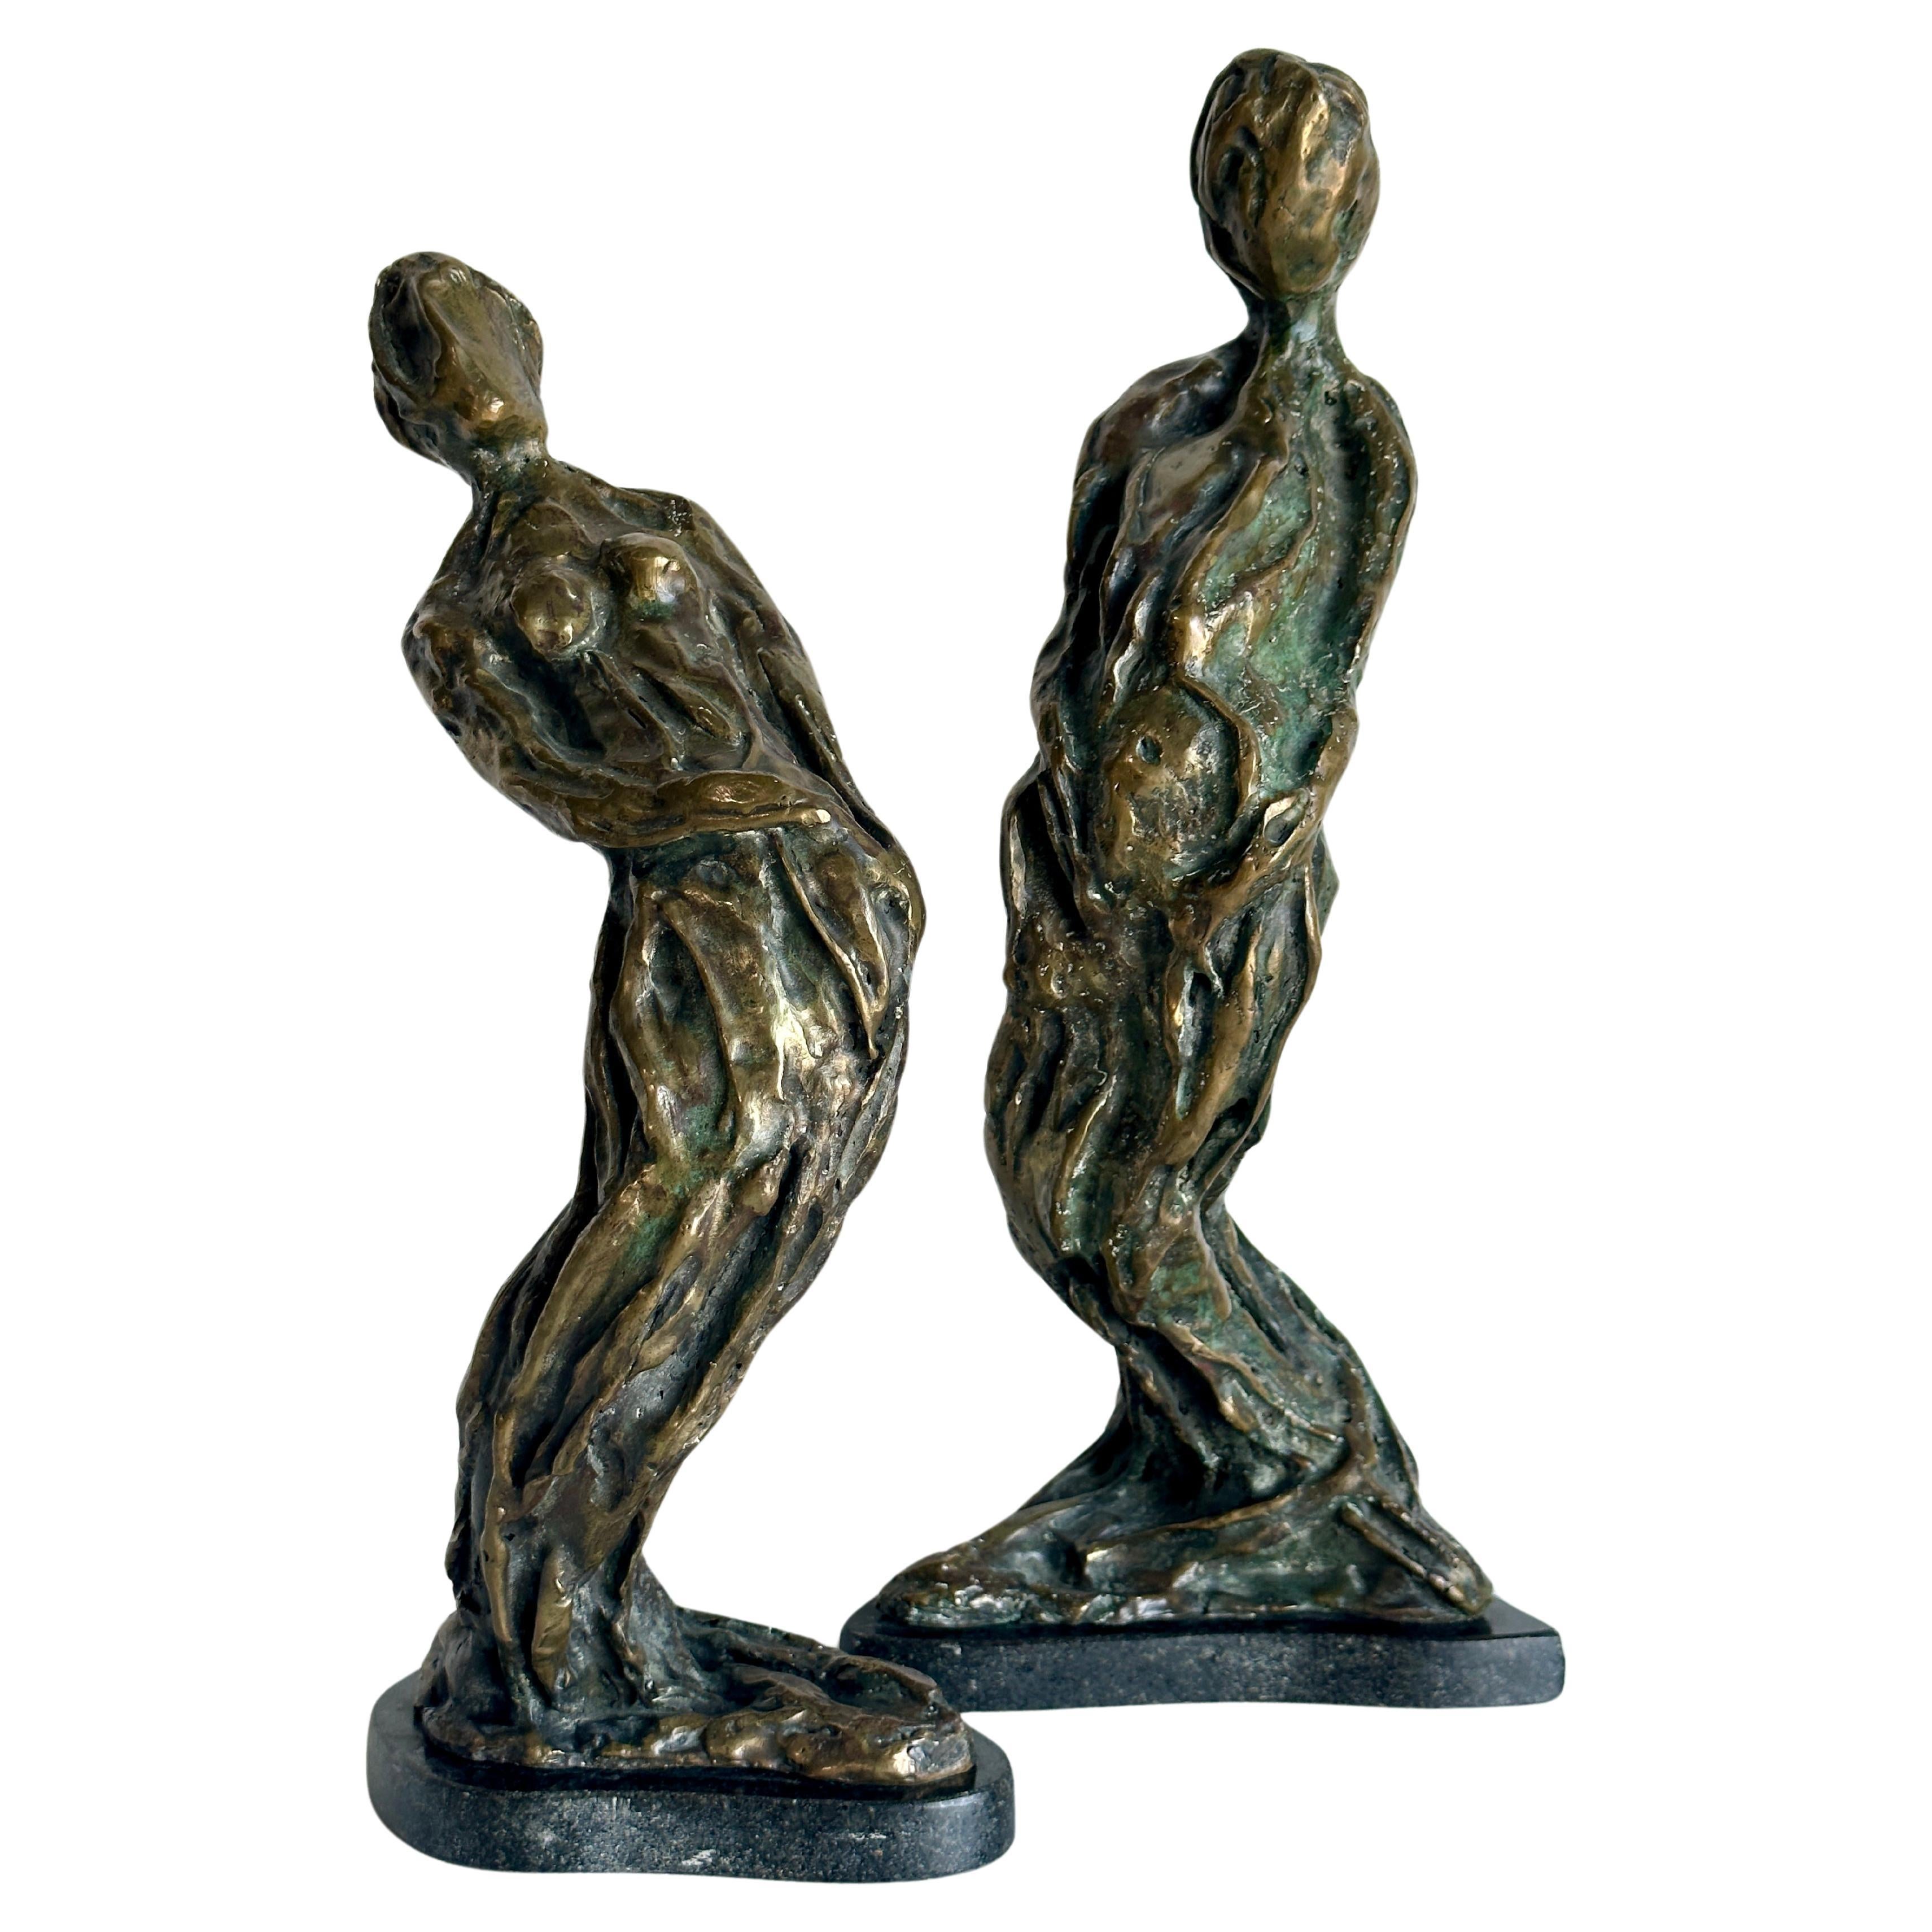 Modernist Figurative abstract bronze sculptures, a pair